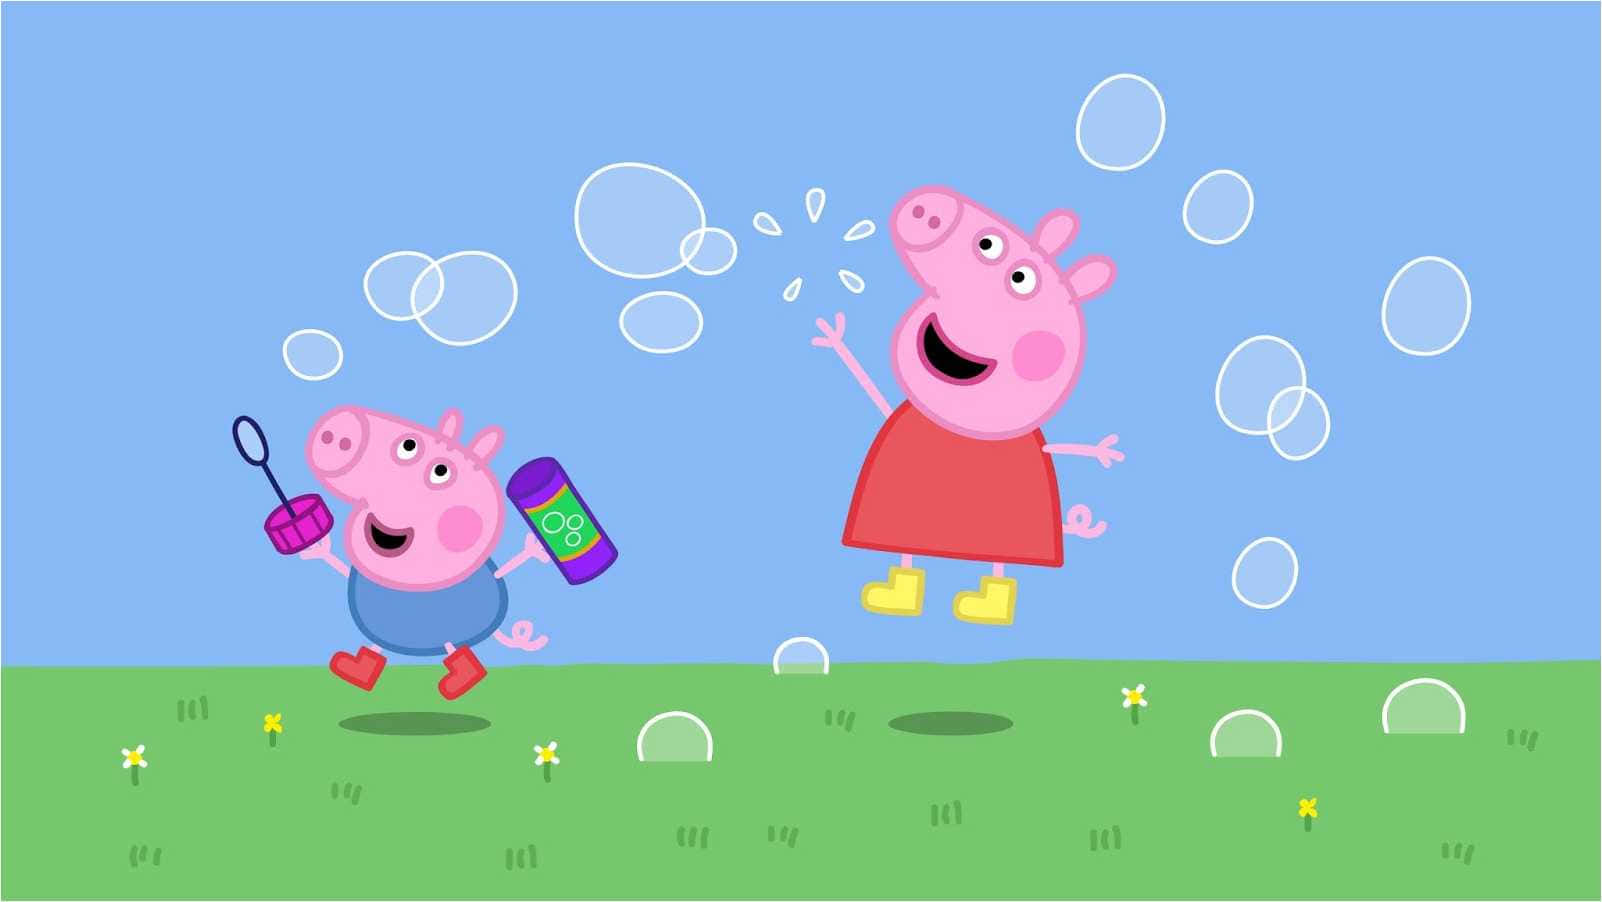 Spielenmit Bubbles George Pig, Peppa Pig Hintergrund